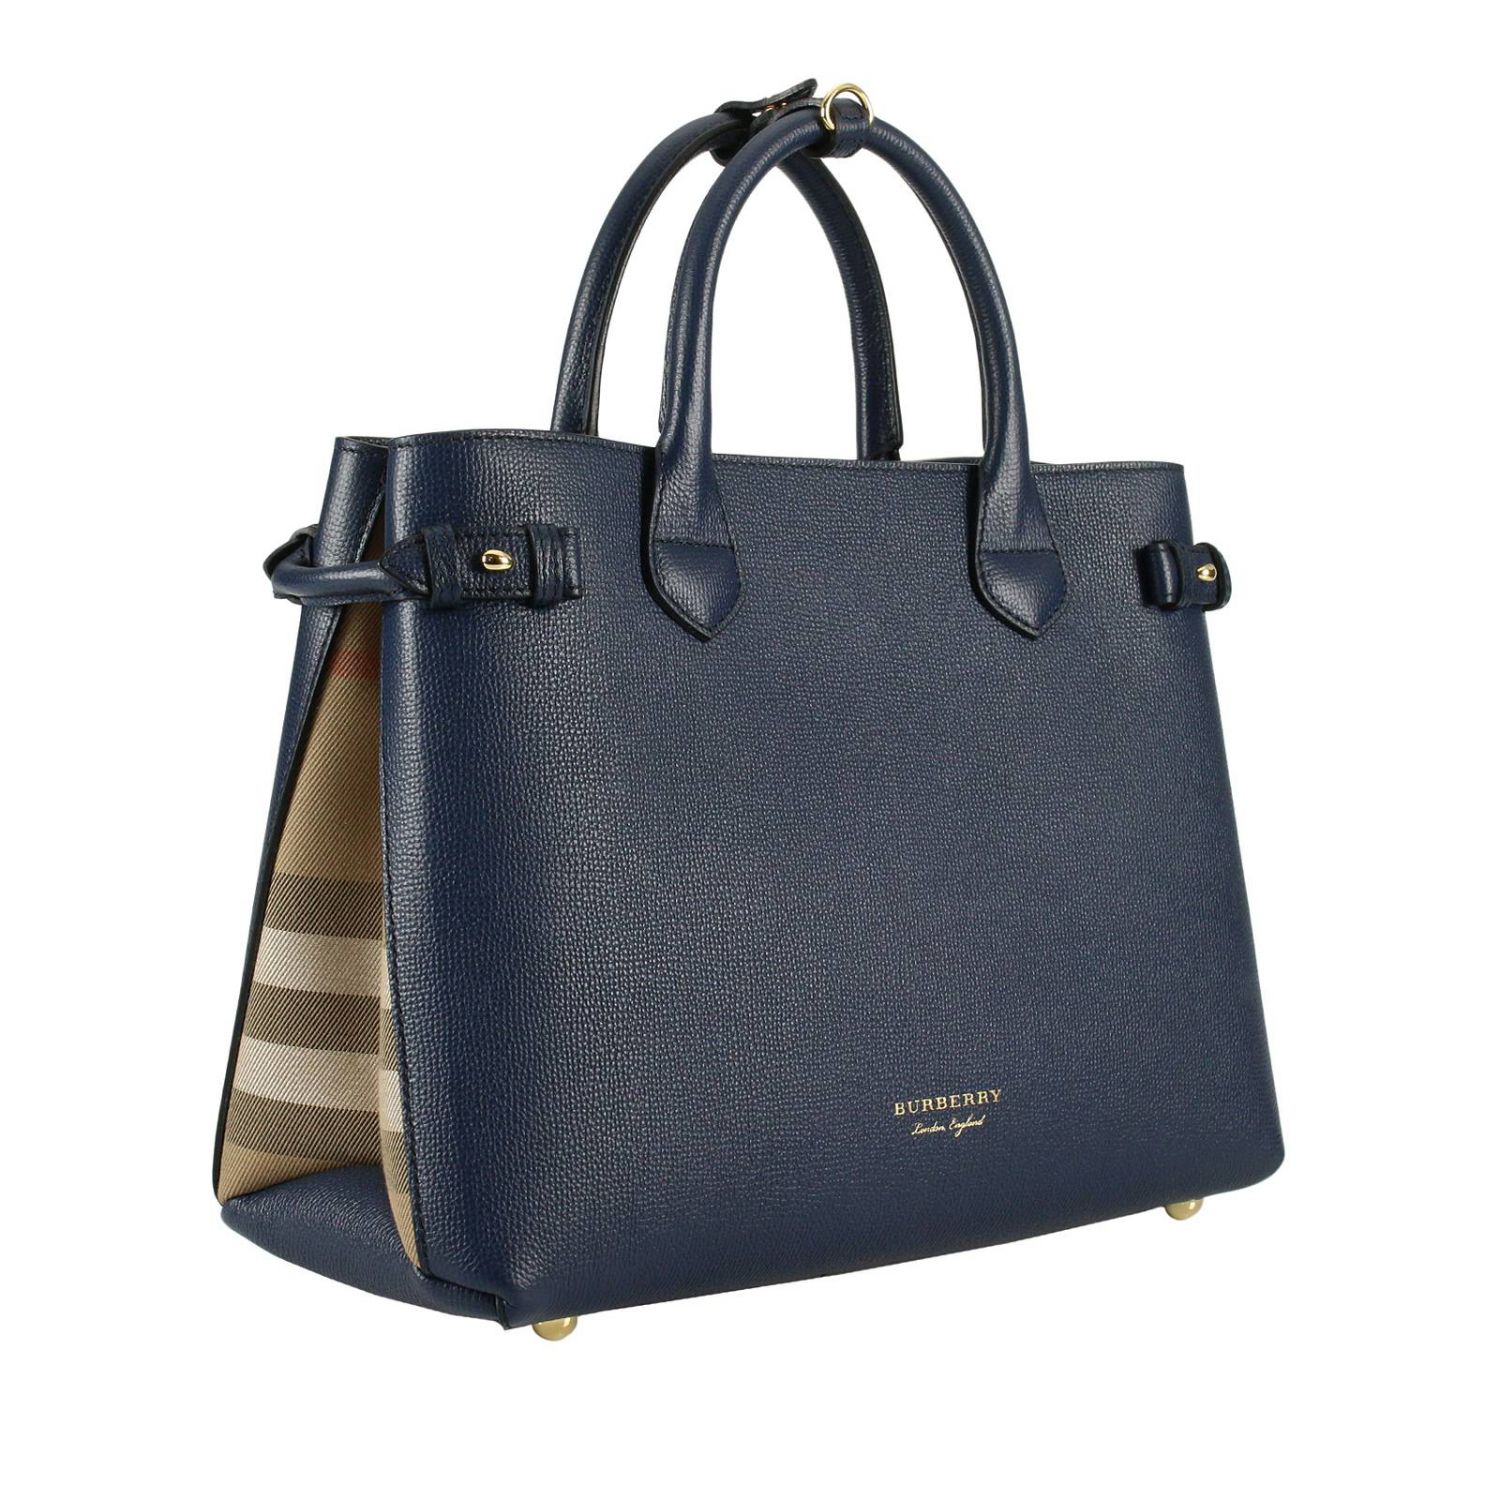 Shoulder bag women Burberry | Handbag Burberry Women Blue | Handbag ...